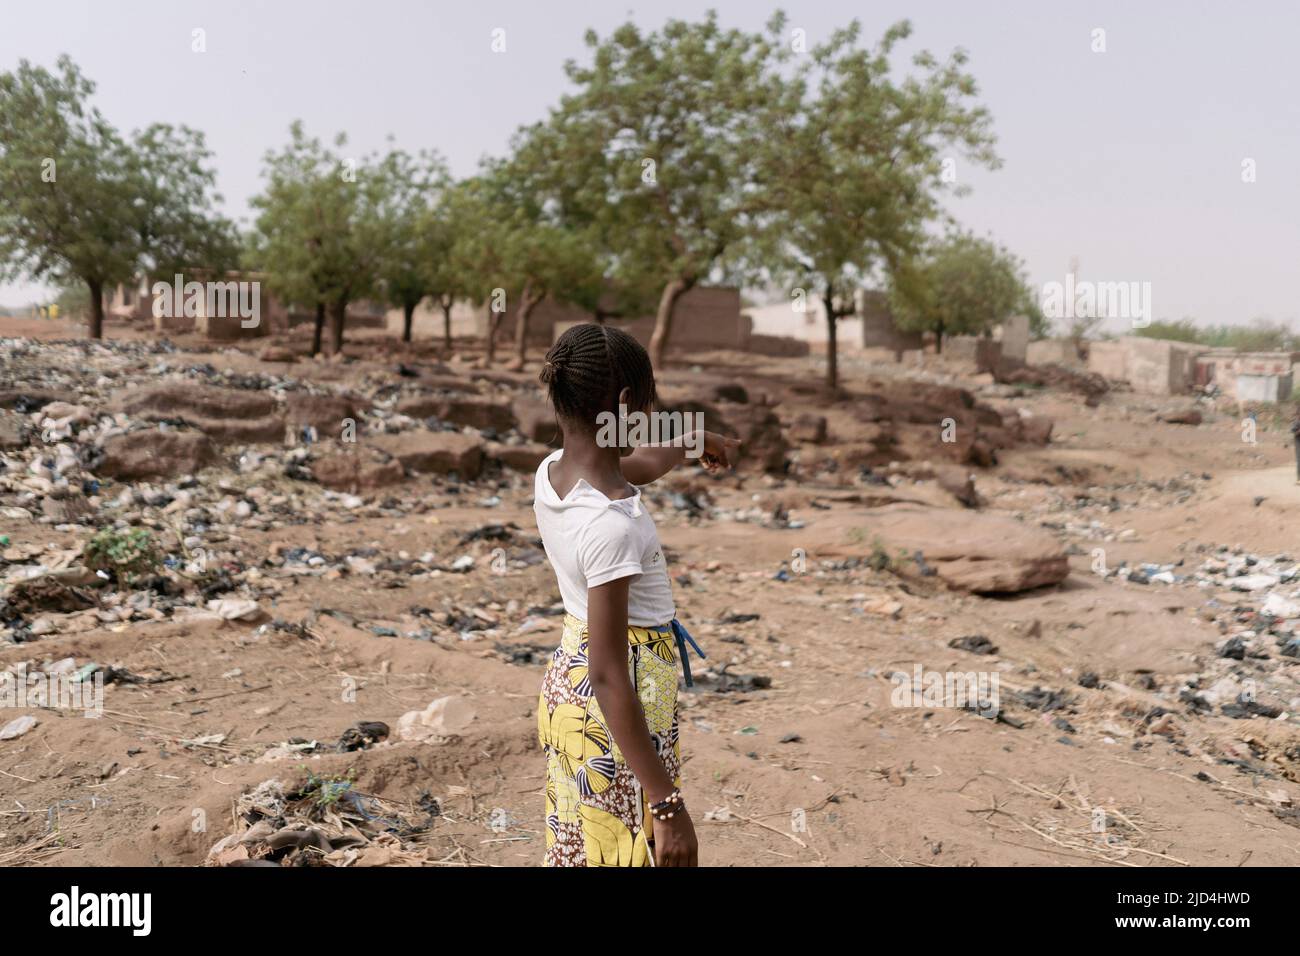 La giovane ragazza africana in piedi con la schiena alla macchina fotografica che indica il paesaggio desolato della sua patria caratterizzato dal cambiamento climatico, desertifica Foto Stock